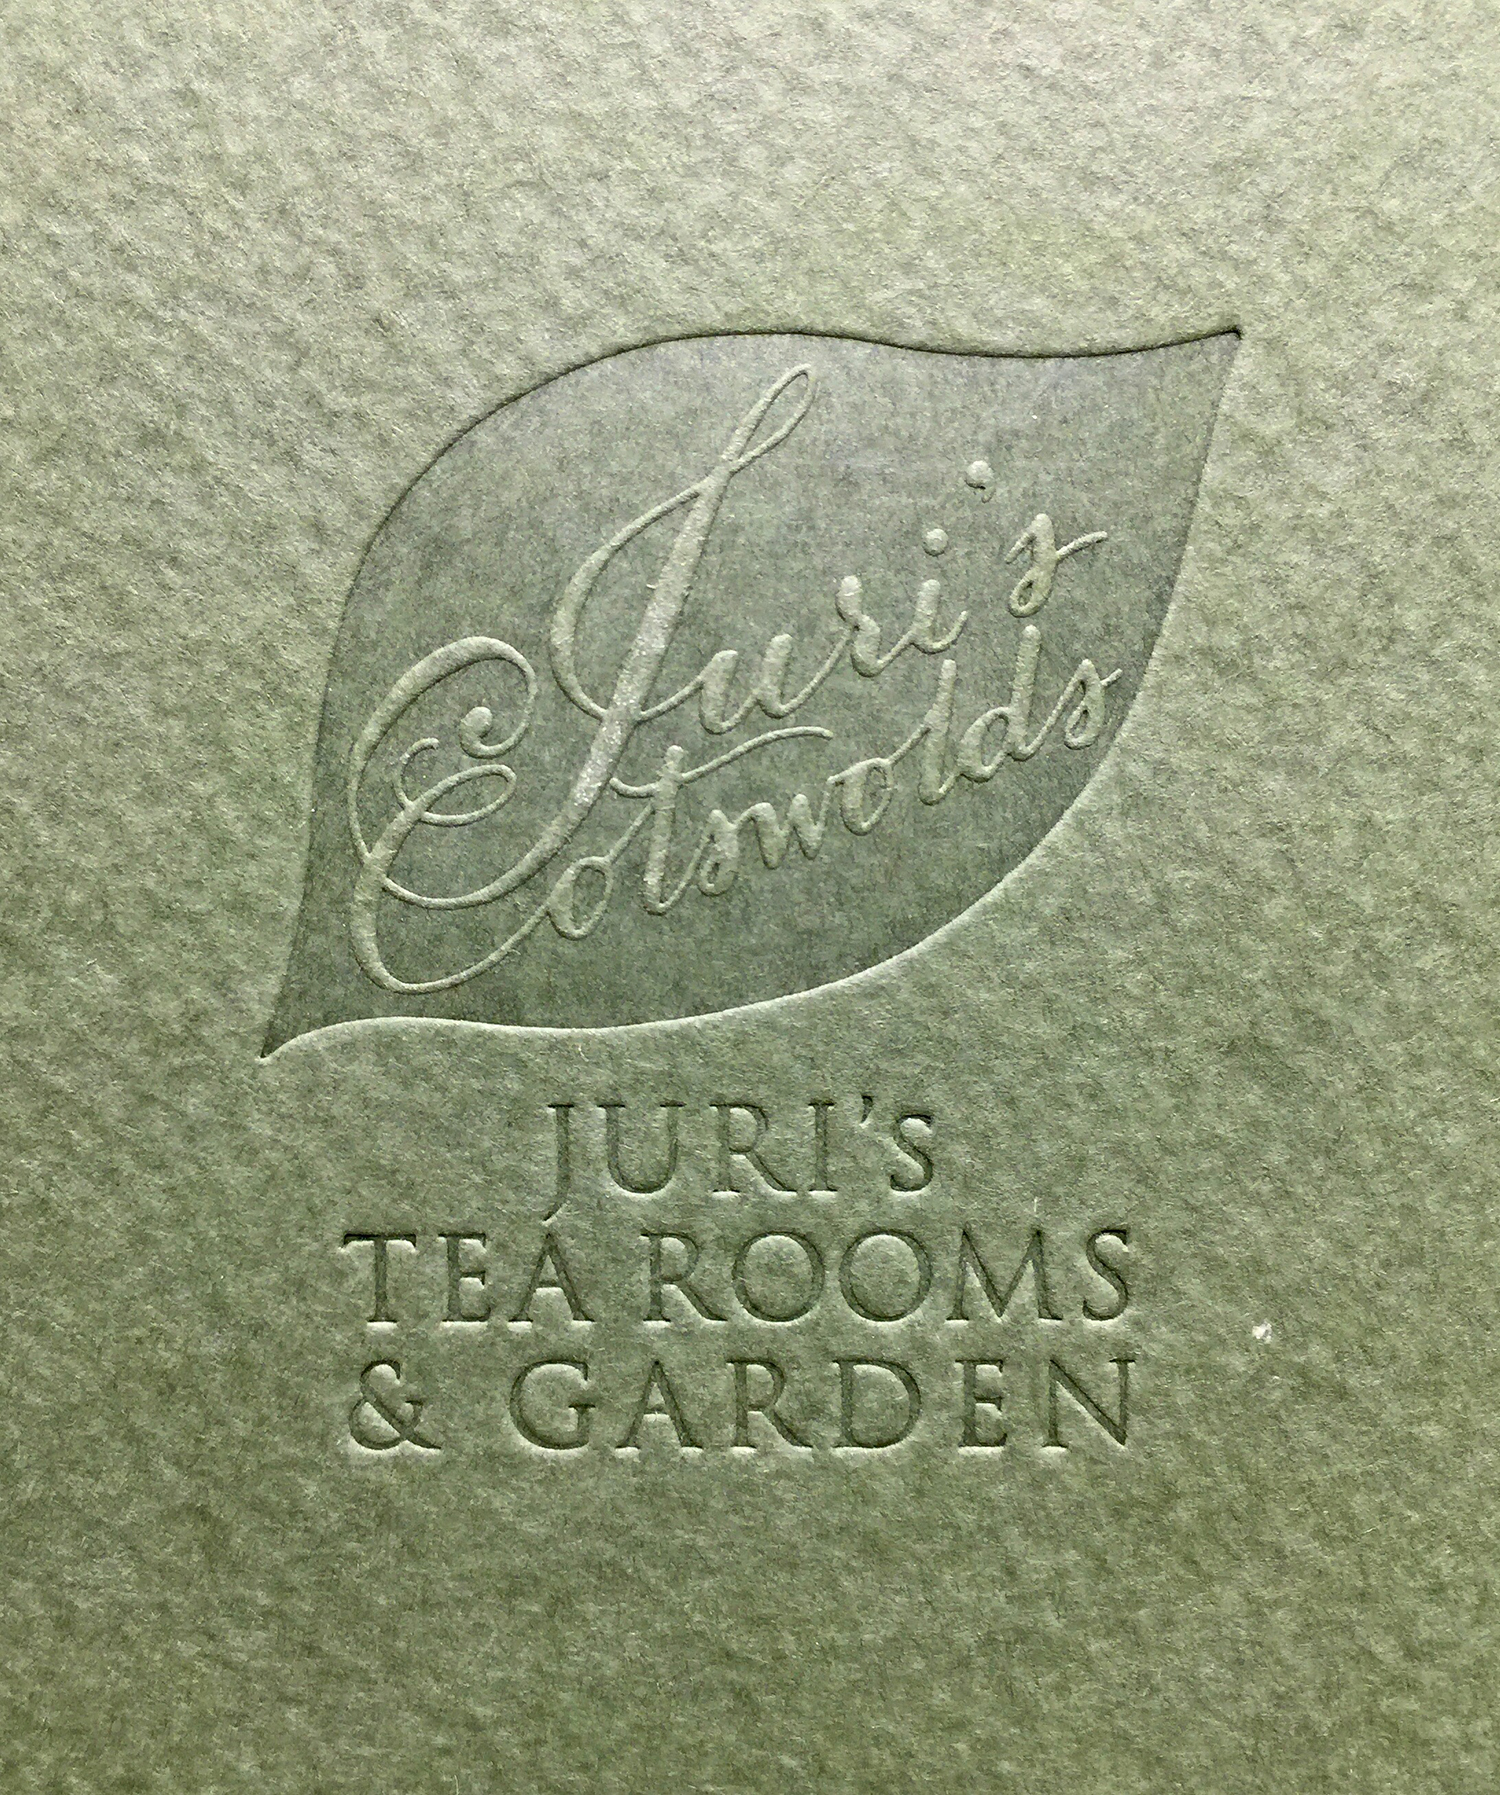 Juri's tearoom